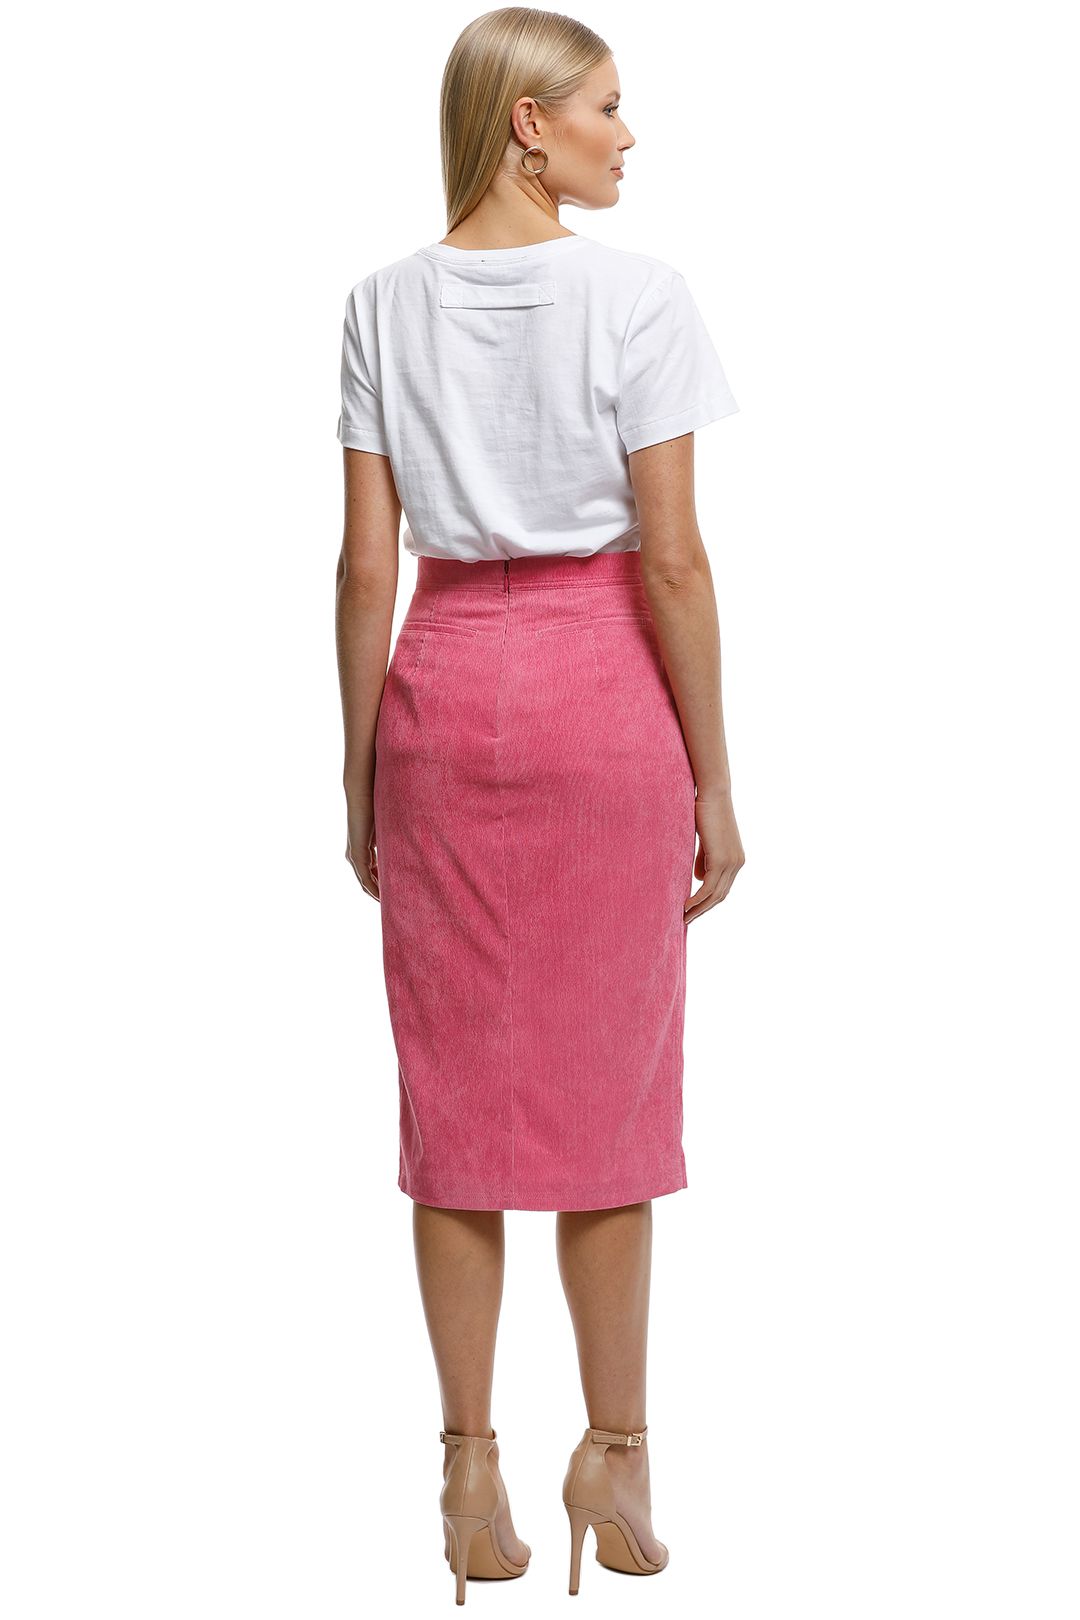 The East Order - Tarvi Skirt - Pink - Back